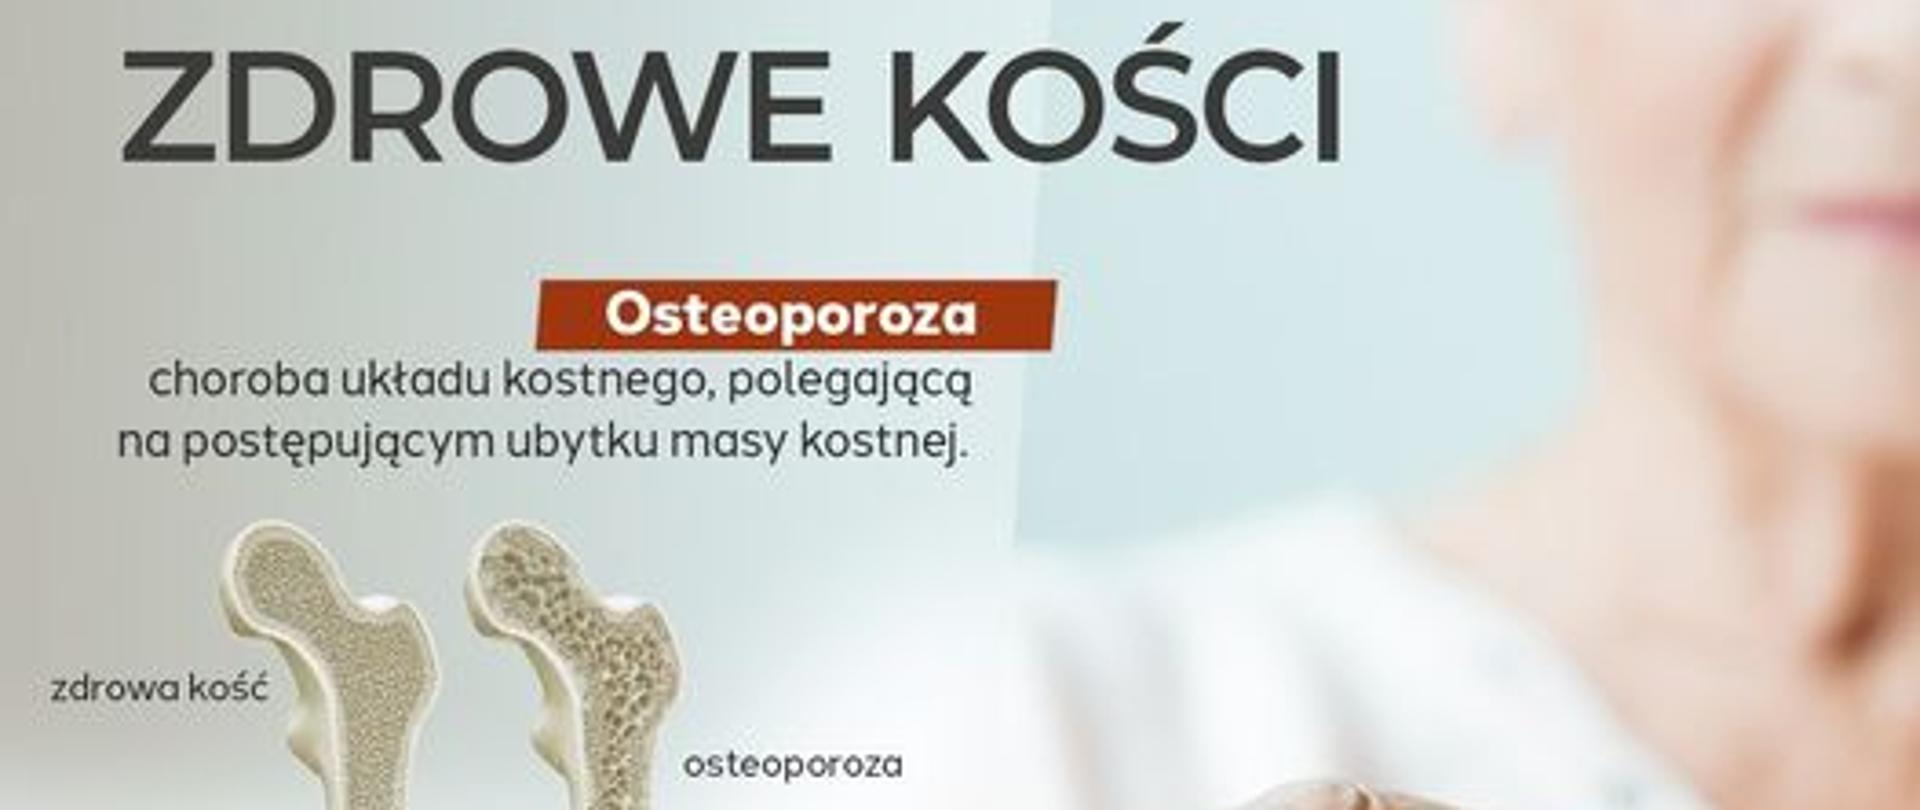 20 października to Światowy Dzień Osteoporozy